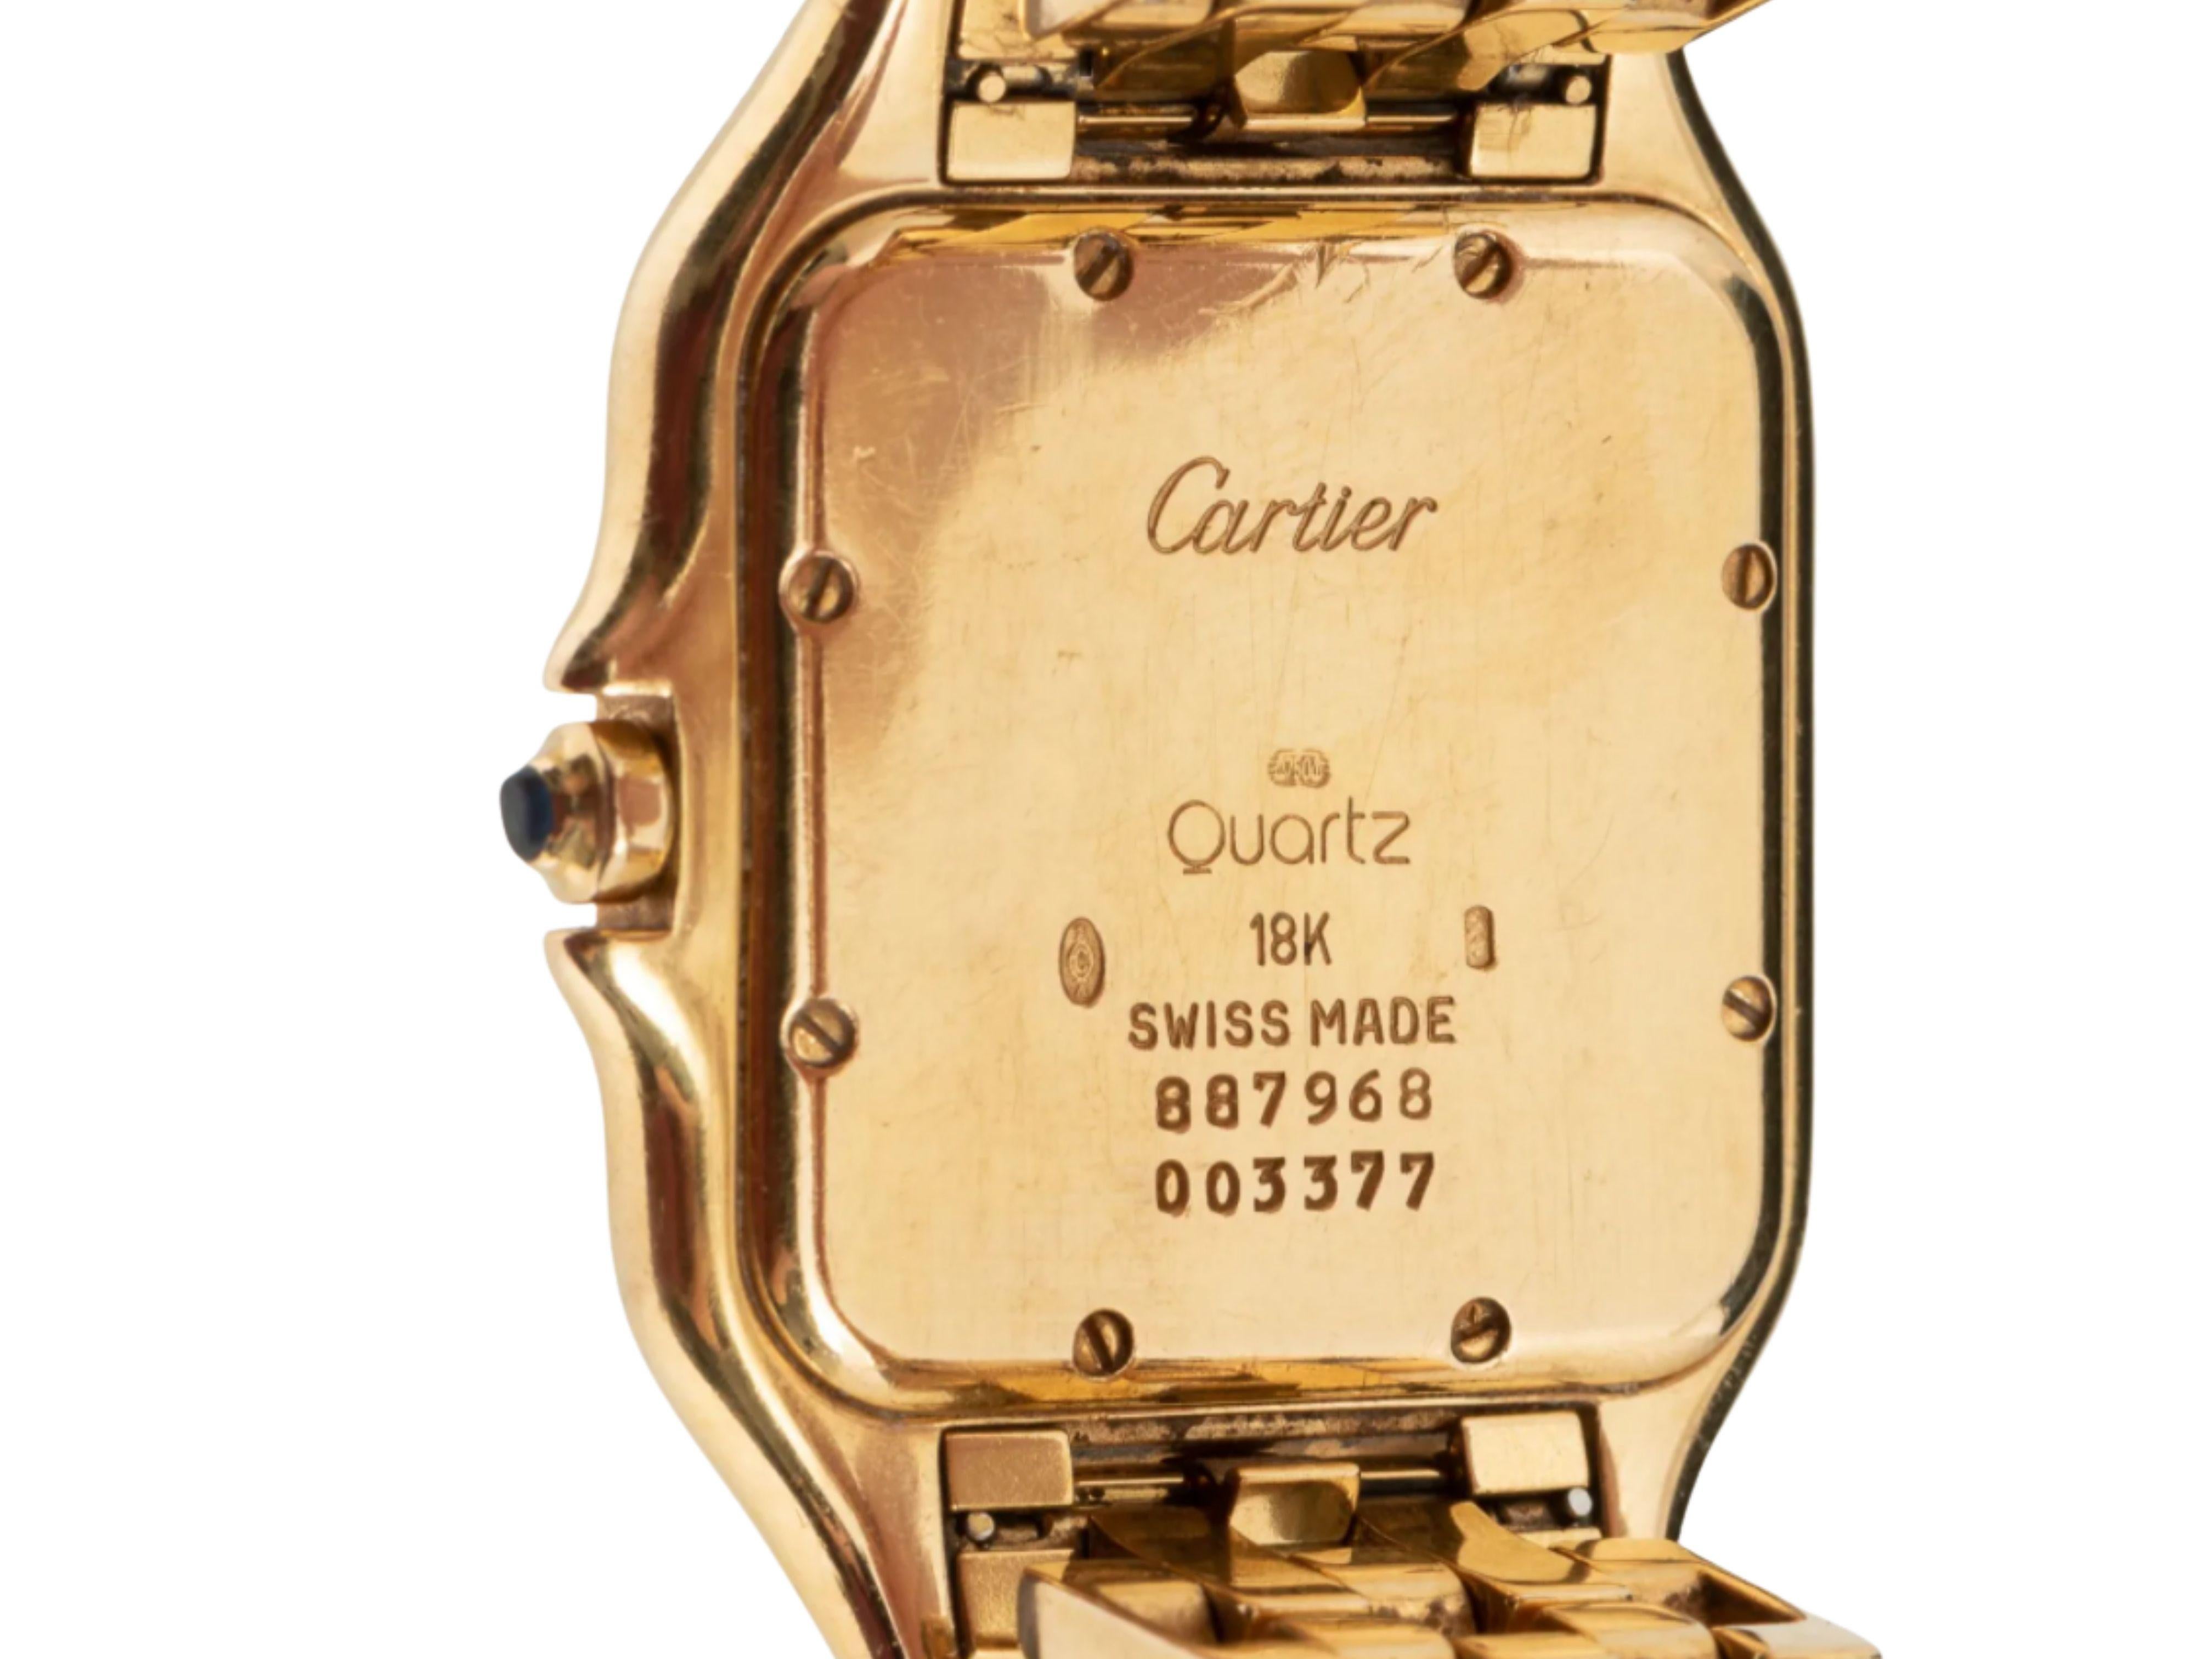 18k Cartier Panthere Model 887968 quartz wristwatch. White dial with Roman numerals, Swiss quartz movement. MEASUREMENTS: 67.9 dwt including works. 1-1/2